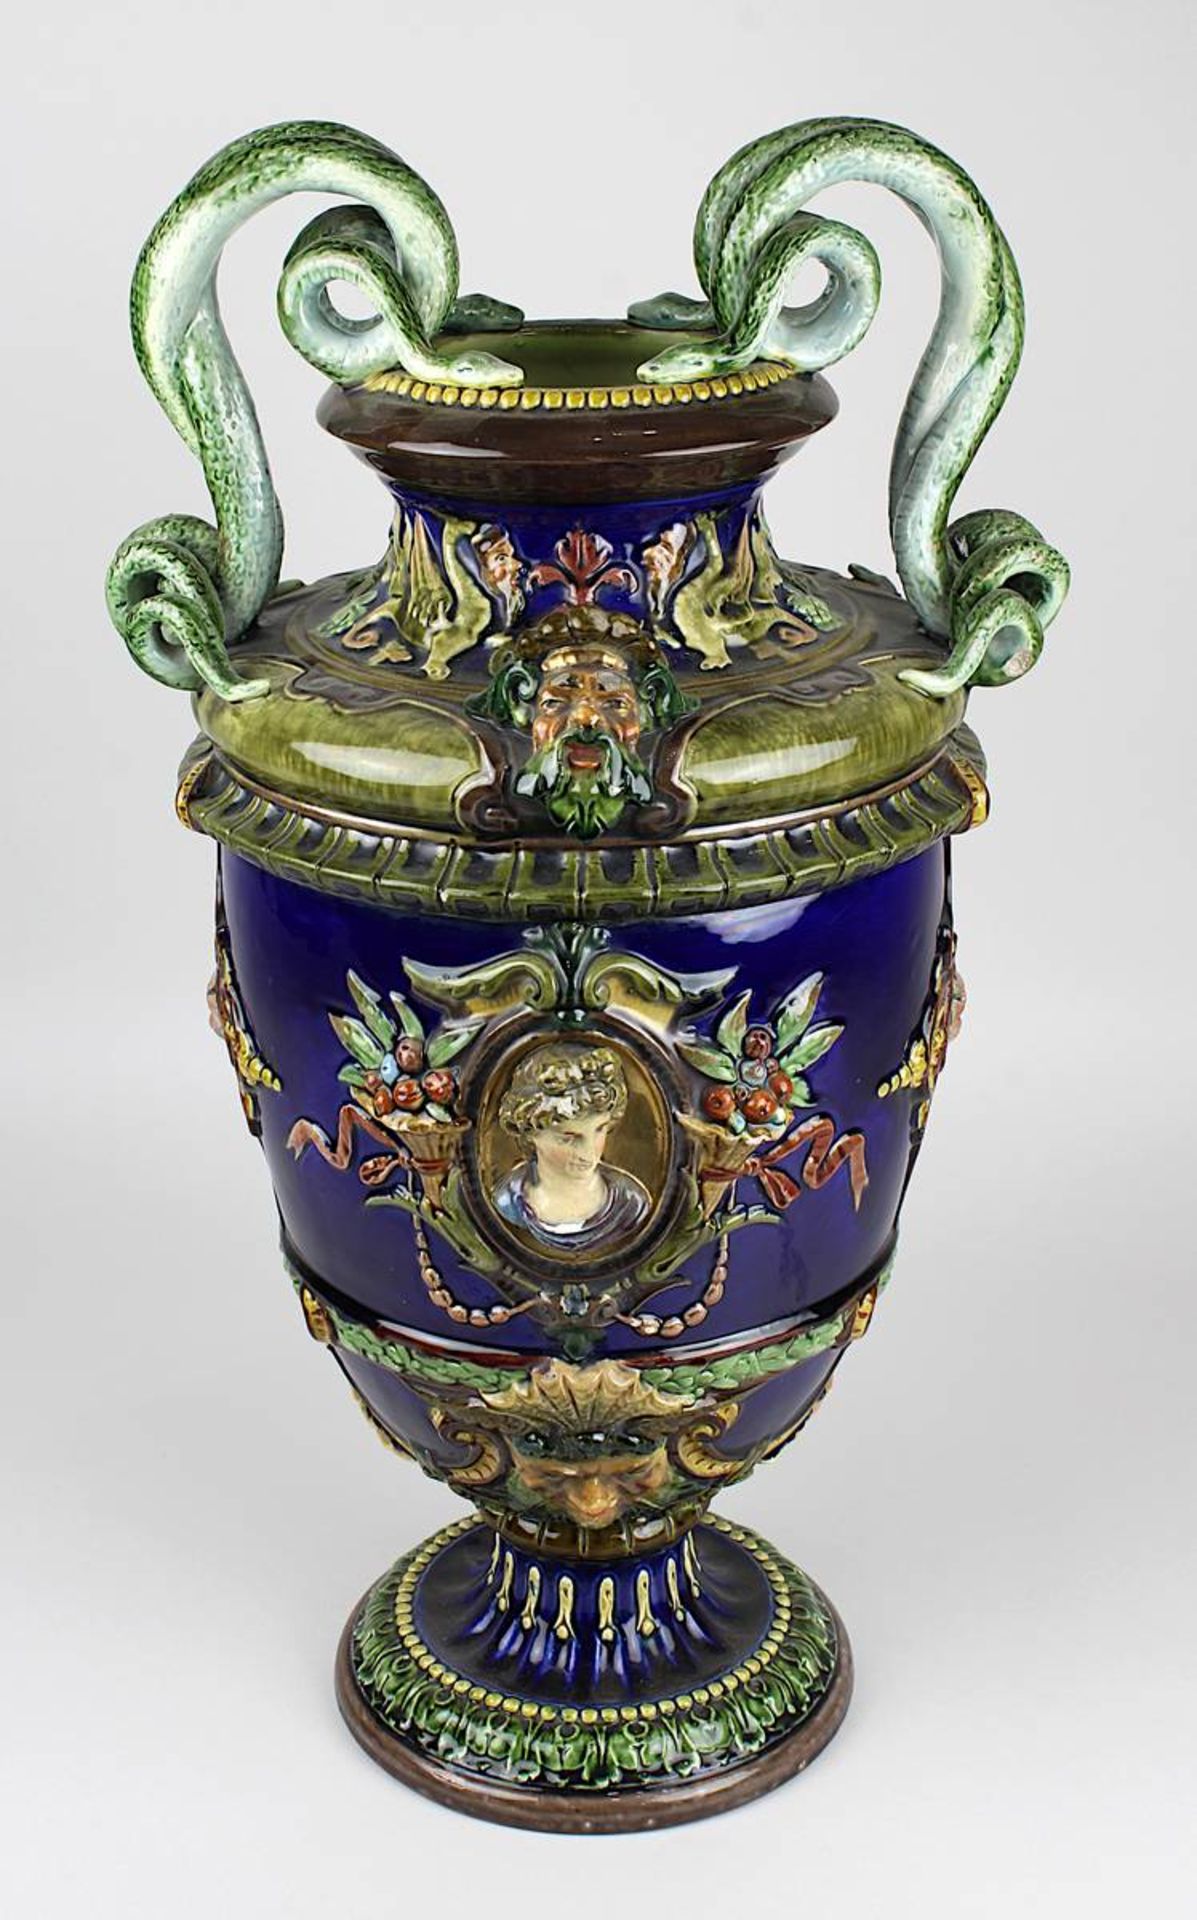 Johann Glatz (wohl) Keramik Prunk-Vase nach italienischem Vorbild der Renaissance, Villingen um